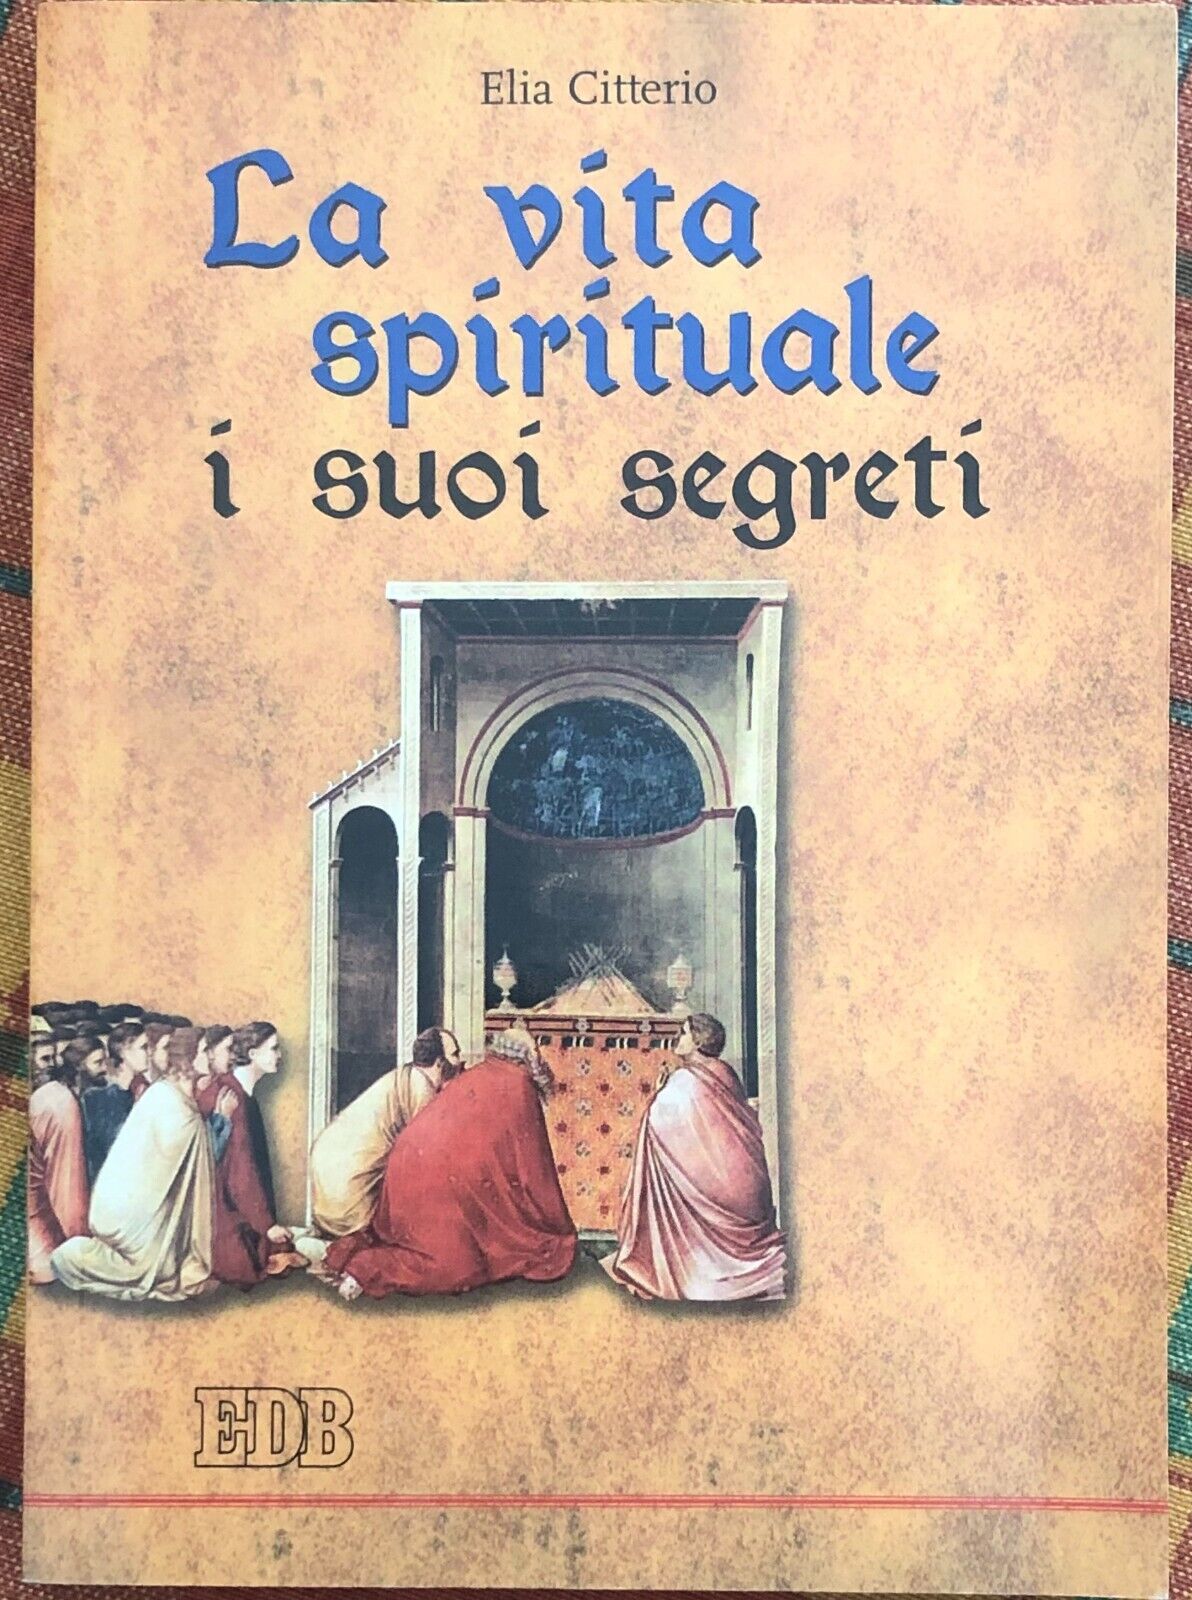 La vita spirituale, i suoi segreti di Elia Citterio, 2005, Edizioni Dehoniane